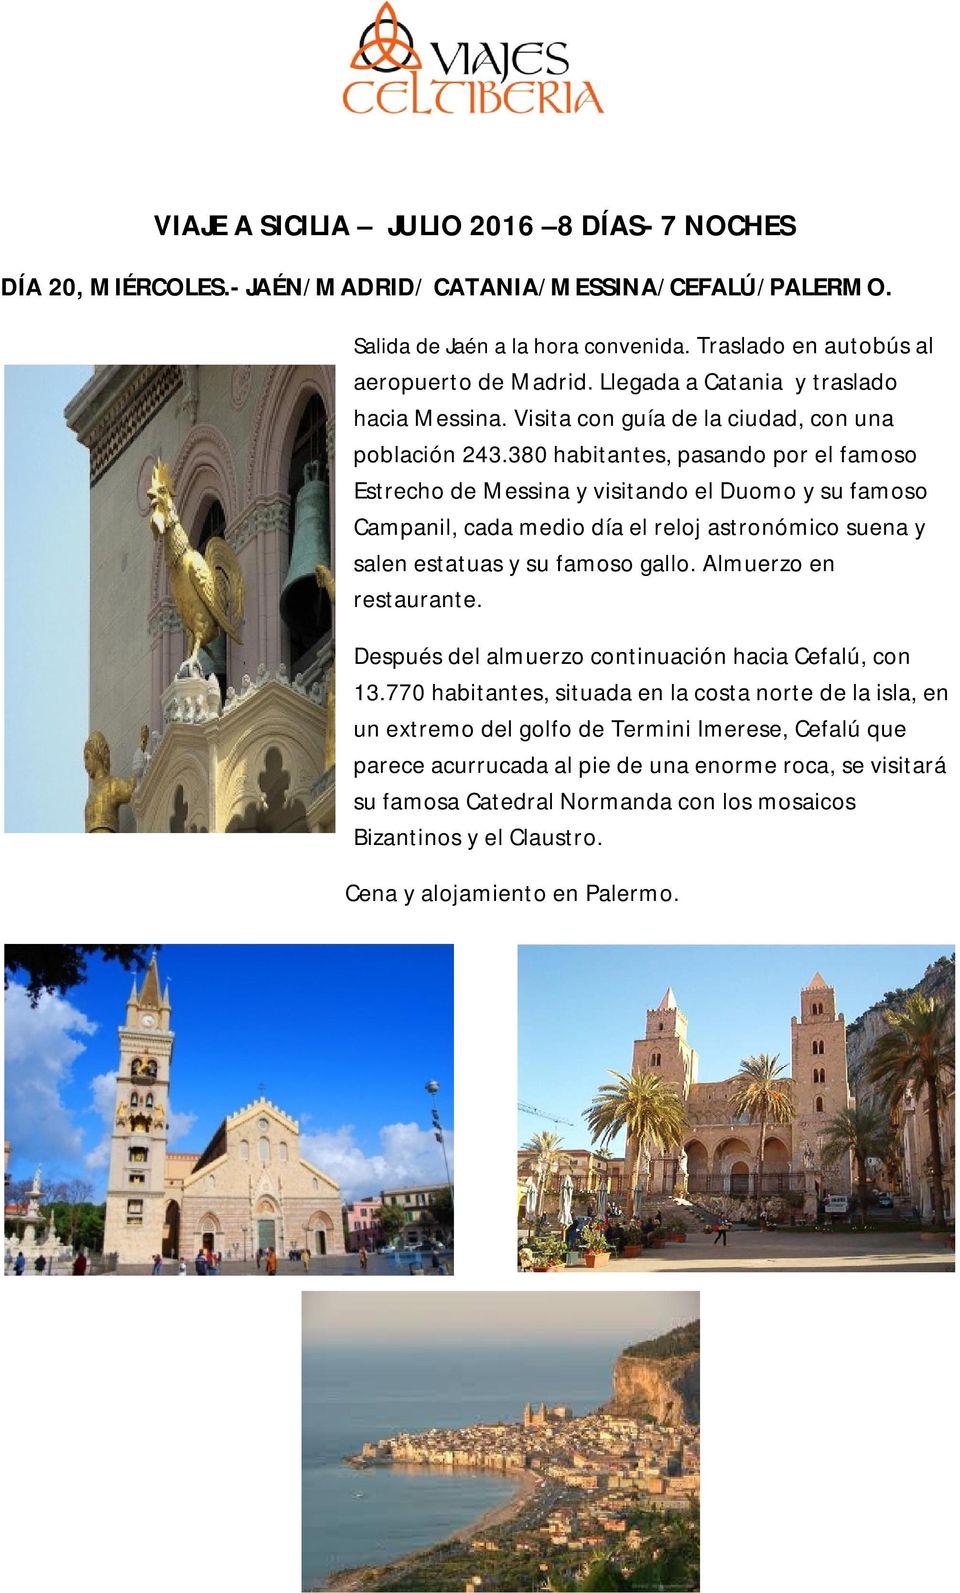 380 habitantes, pasando por el famoso Estrecho de Messina y visitando el Duomo y su famoso Campanil, cada medio día el reloj astronómico suena y salen estatuas y su famoso gallo.